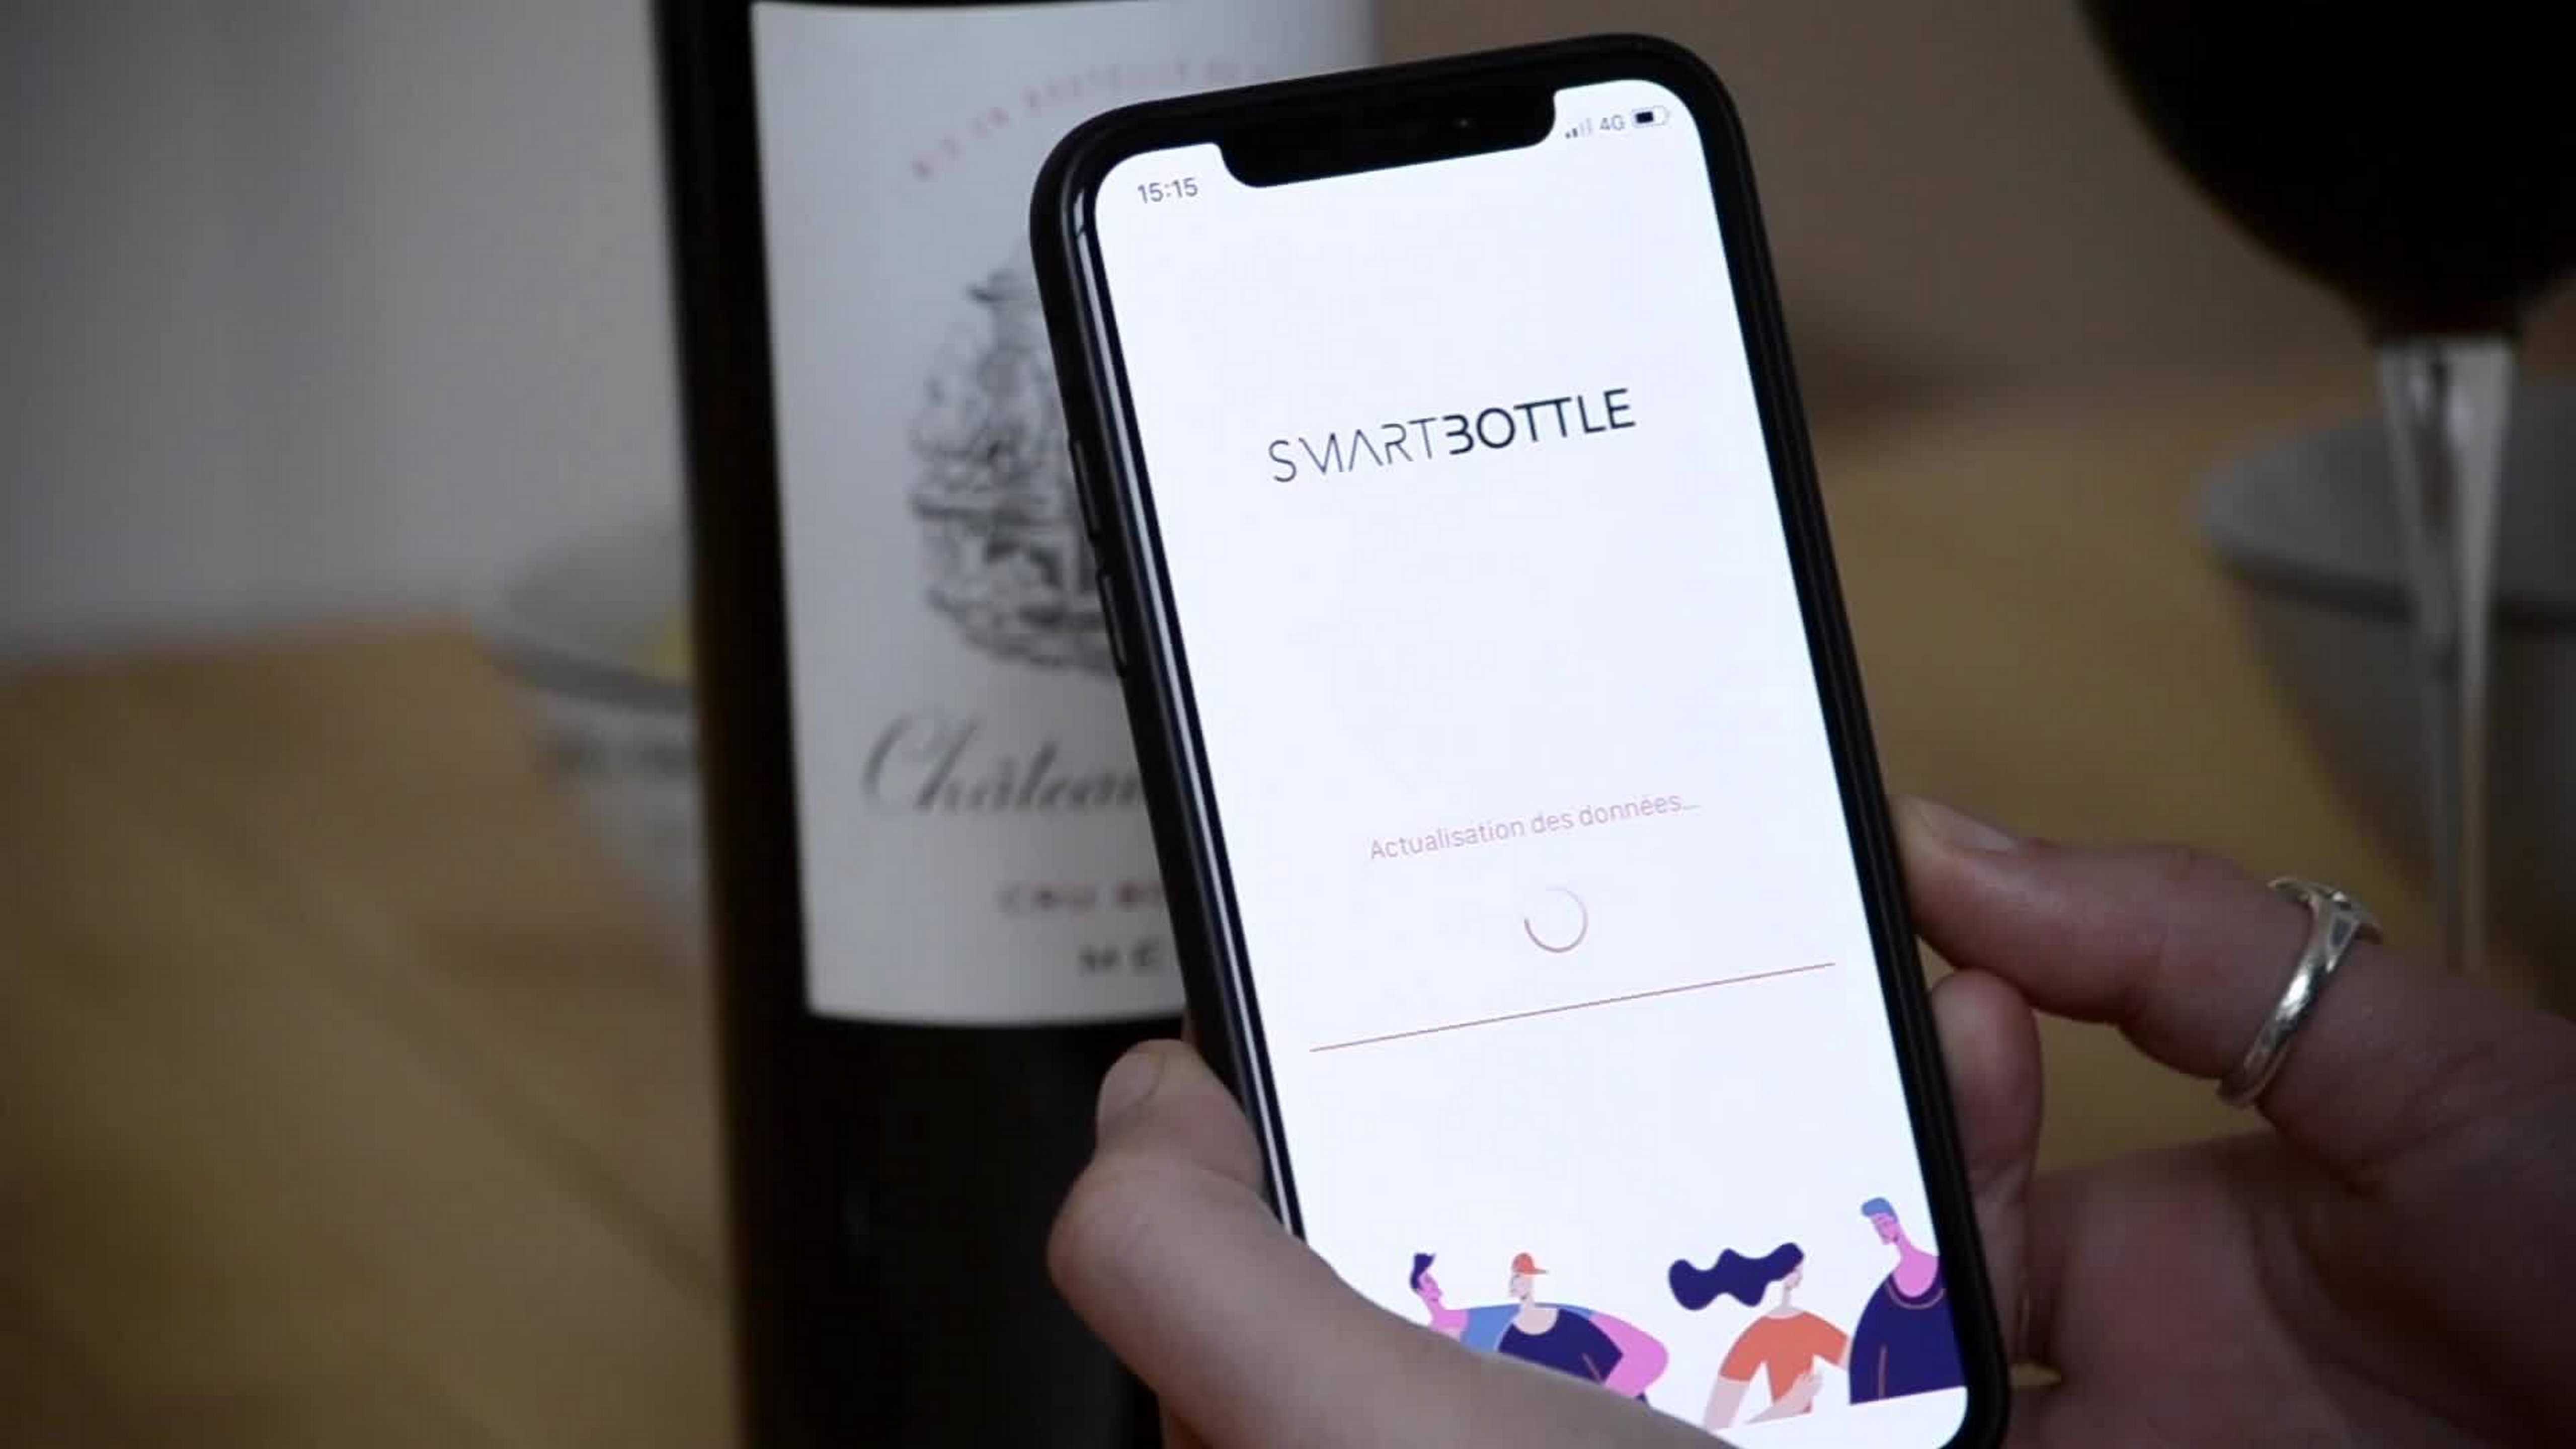 Les bouteilles de vins communiquent grâce à une nouvelle application intelligente : "Smartbottle"